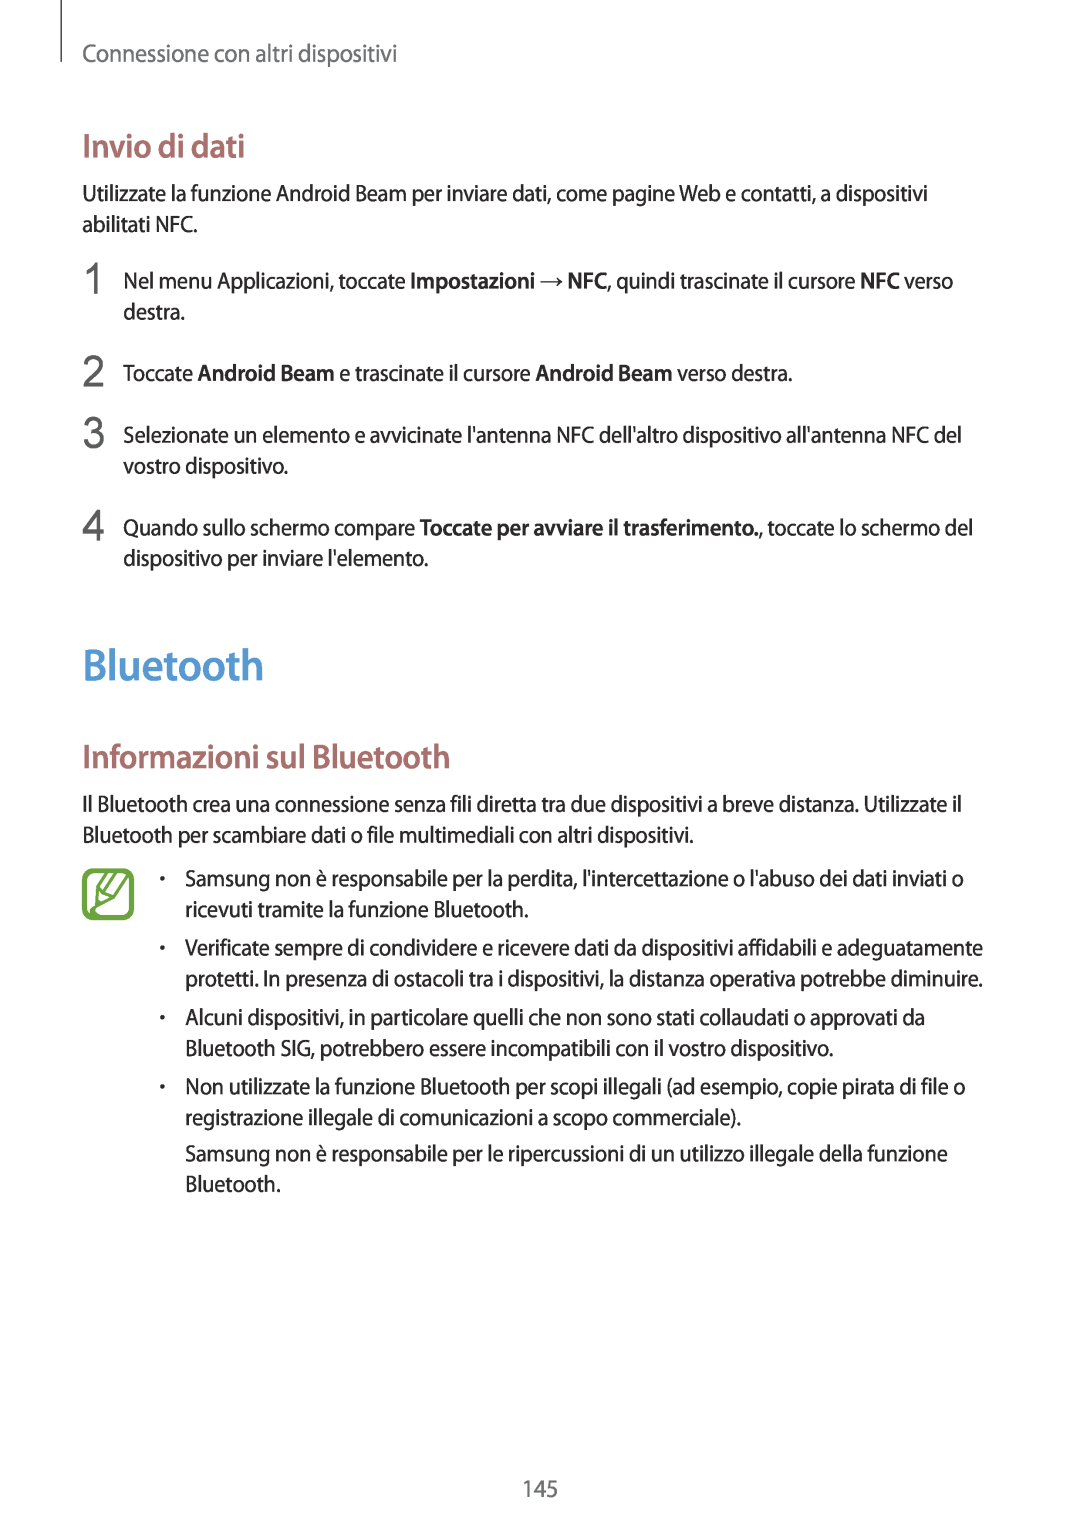 Samsung SM-G900FZKAIDE, SM-G900FZKADBT Invio di dati, Informazioni sul Bluetooth, Connessione con altri dispositivi 